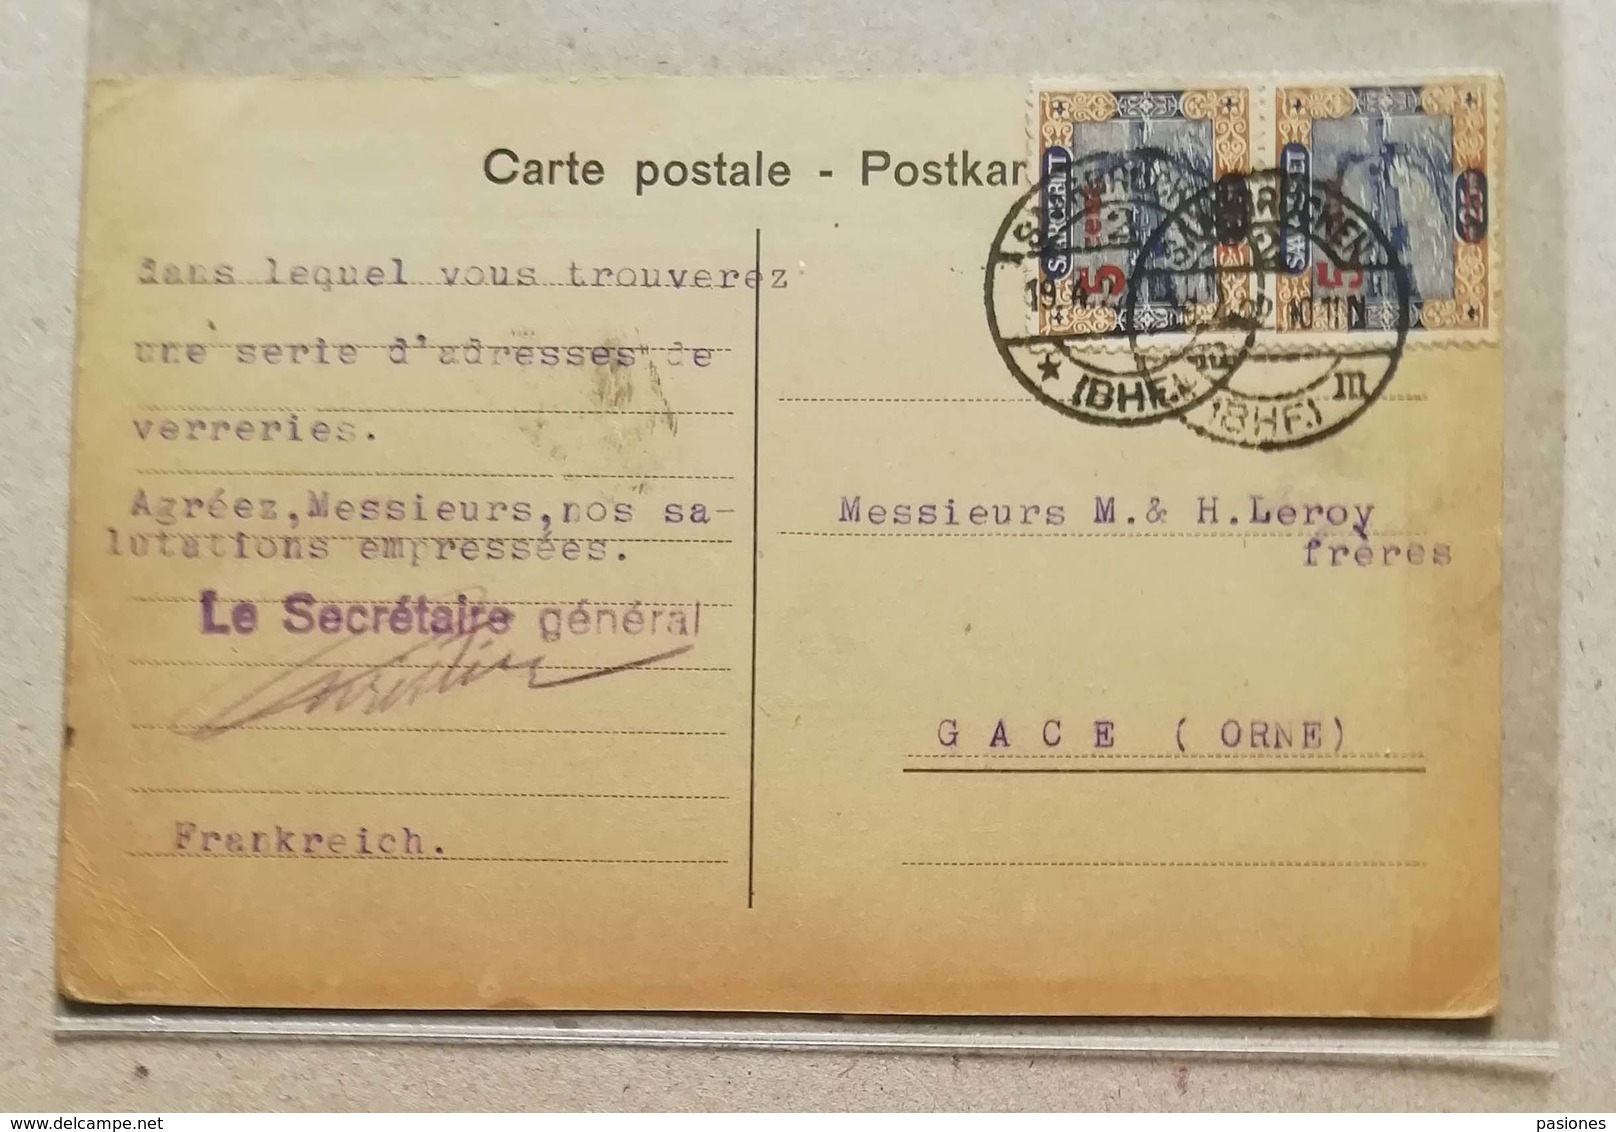 Cartolina Postale Sarre Francese Per Gace (Orne) - 19/04/1922 Affrancata Con Coppia Da 5cent. Sovrastampata Su 25cent. - Storia Postale